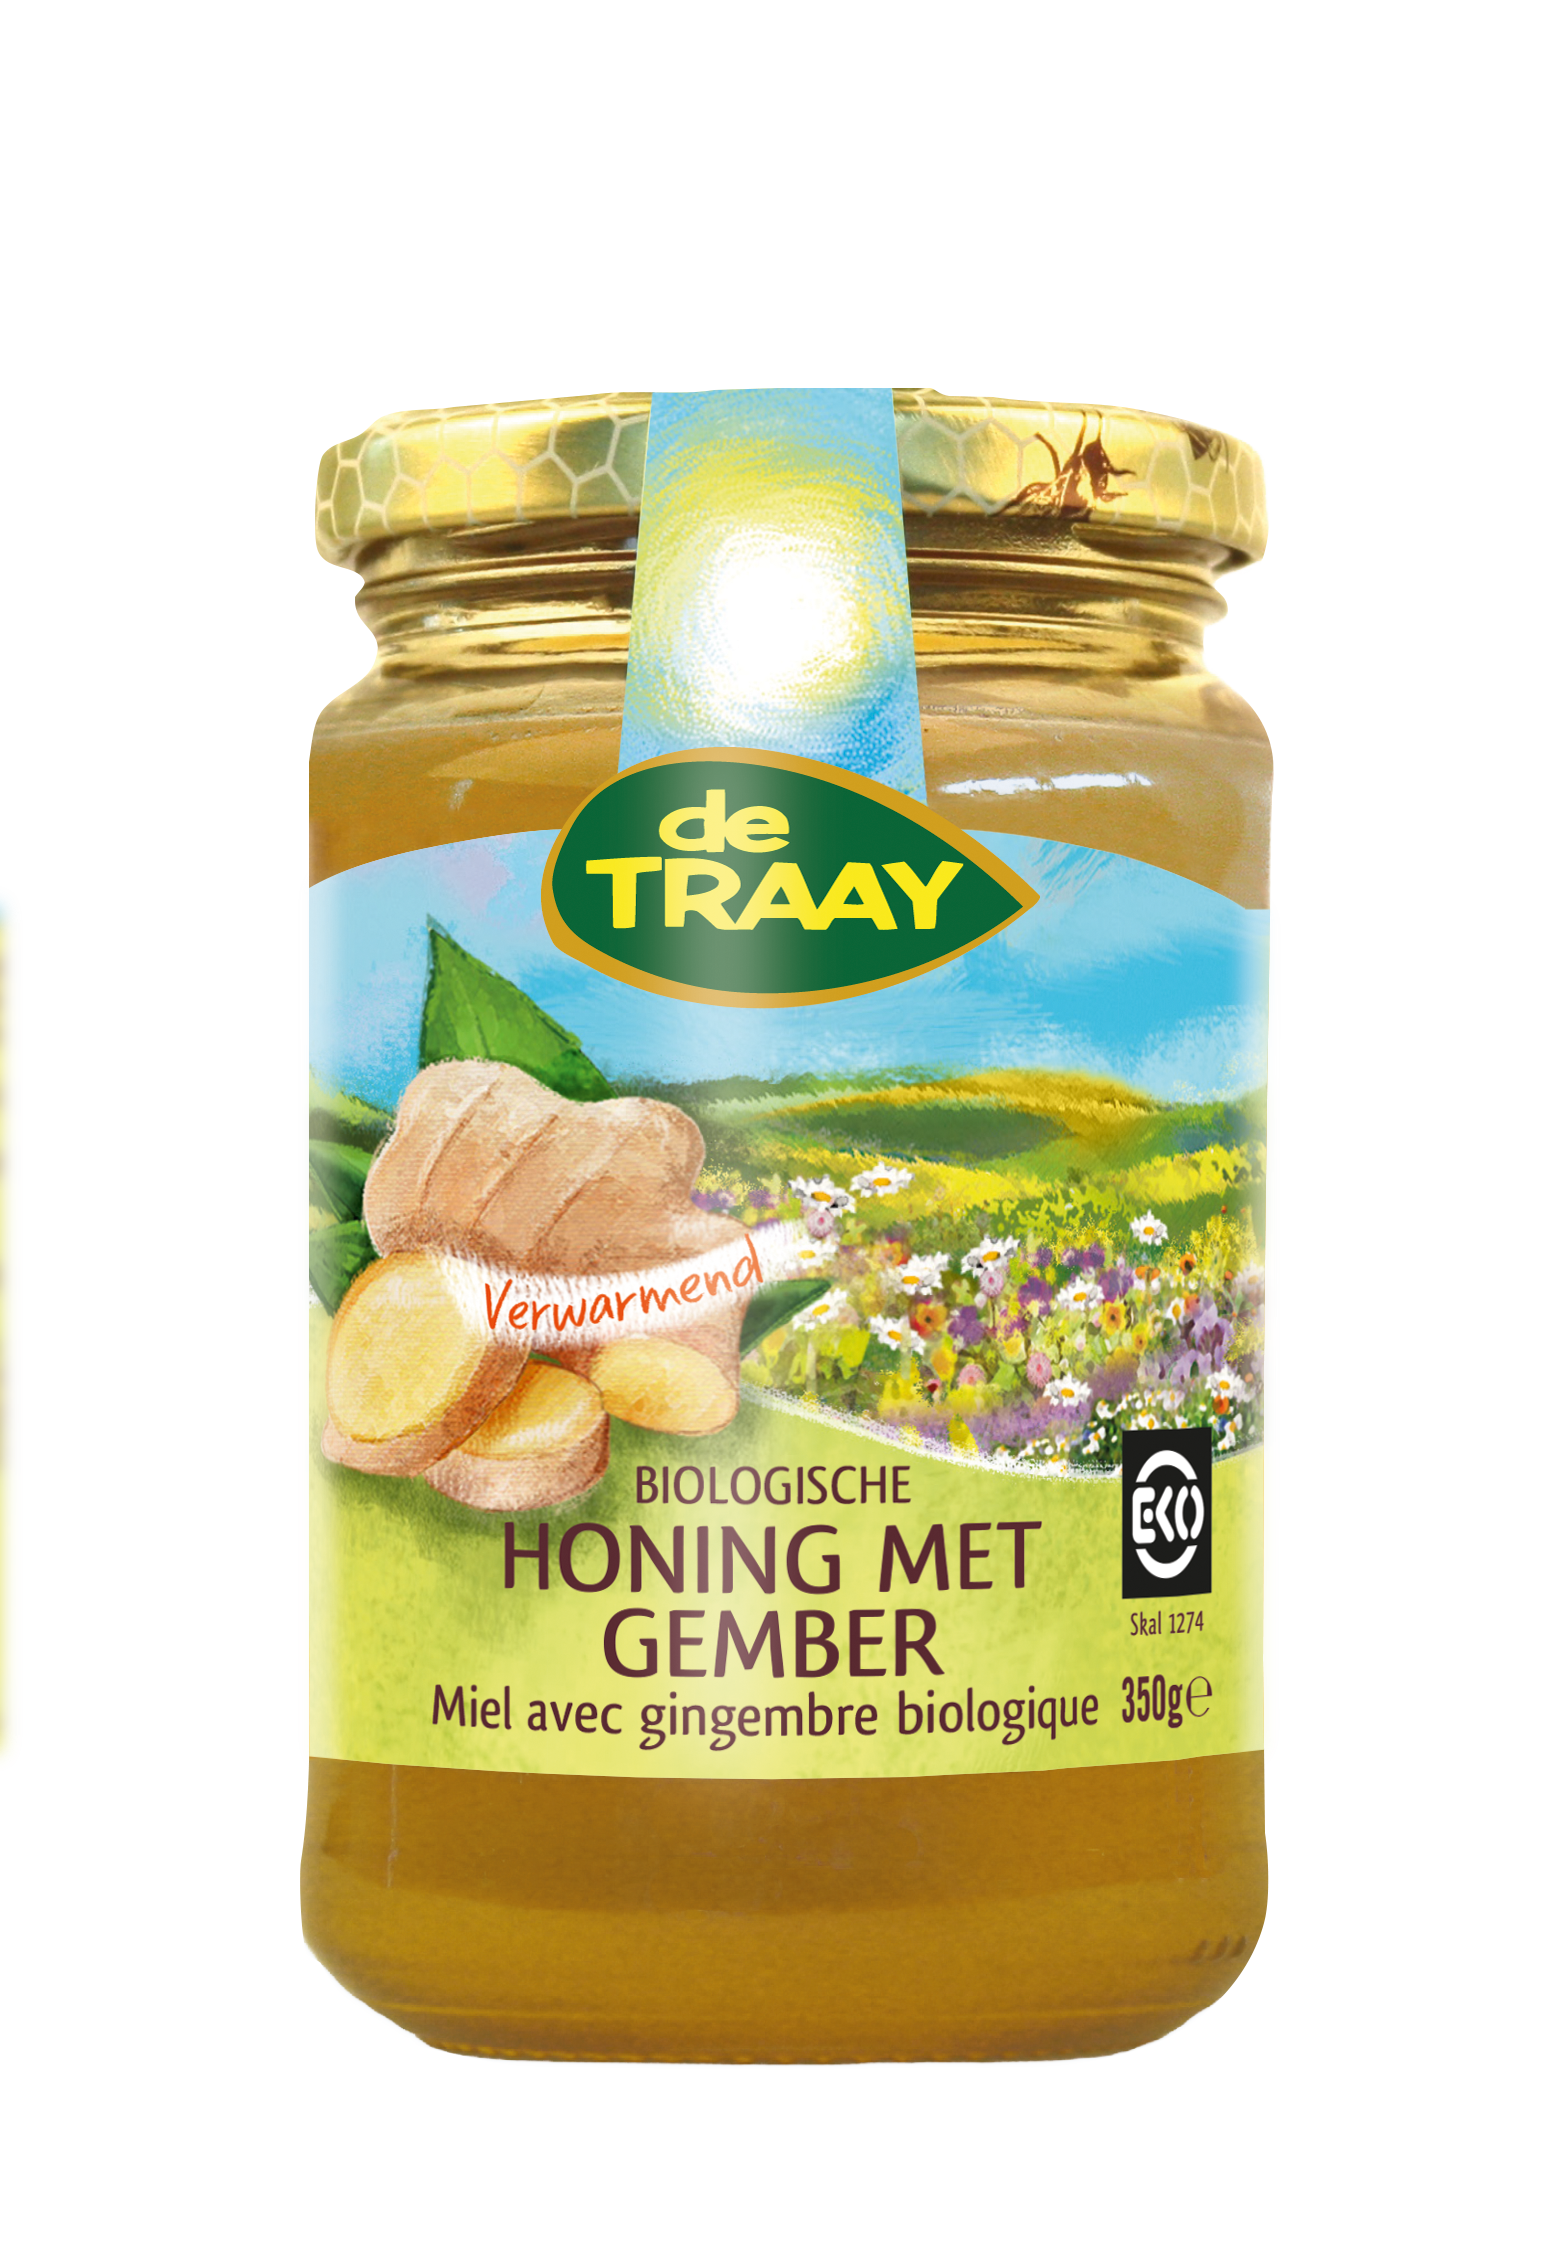 Honing met gember van Traay, 6 x 350 g